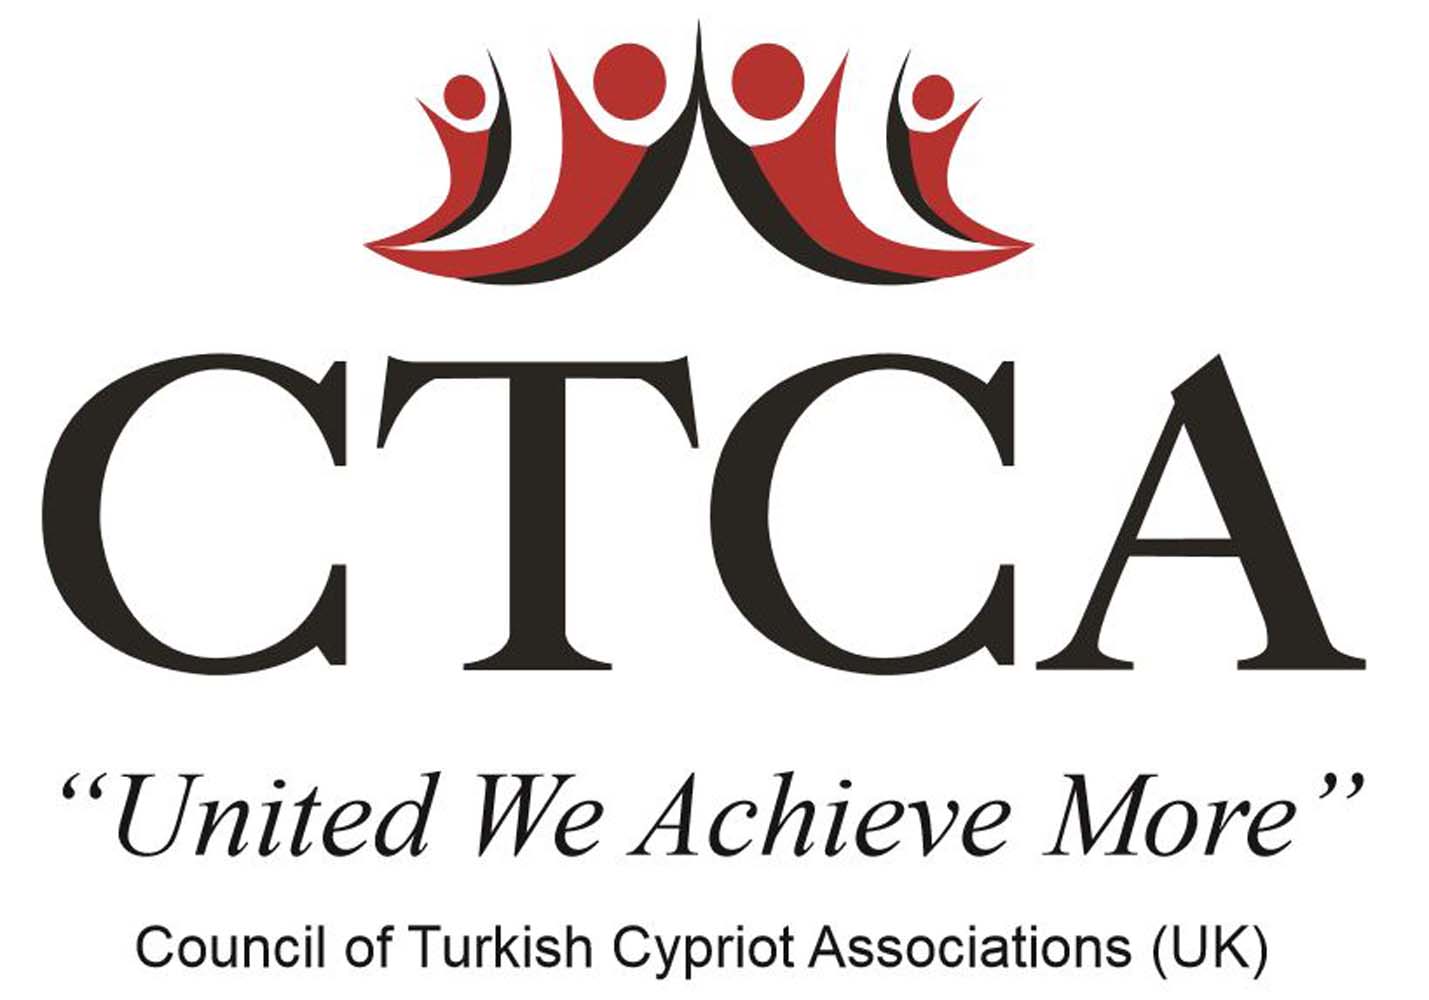 Ο Δήμος θα πραγματοποιήσει διαδικτυακά πάνελ για την Κύπρο